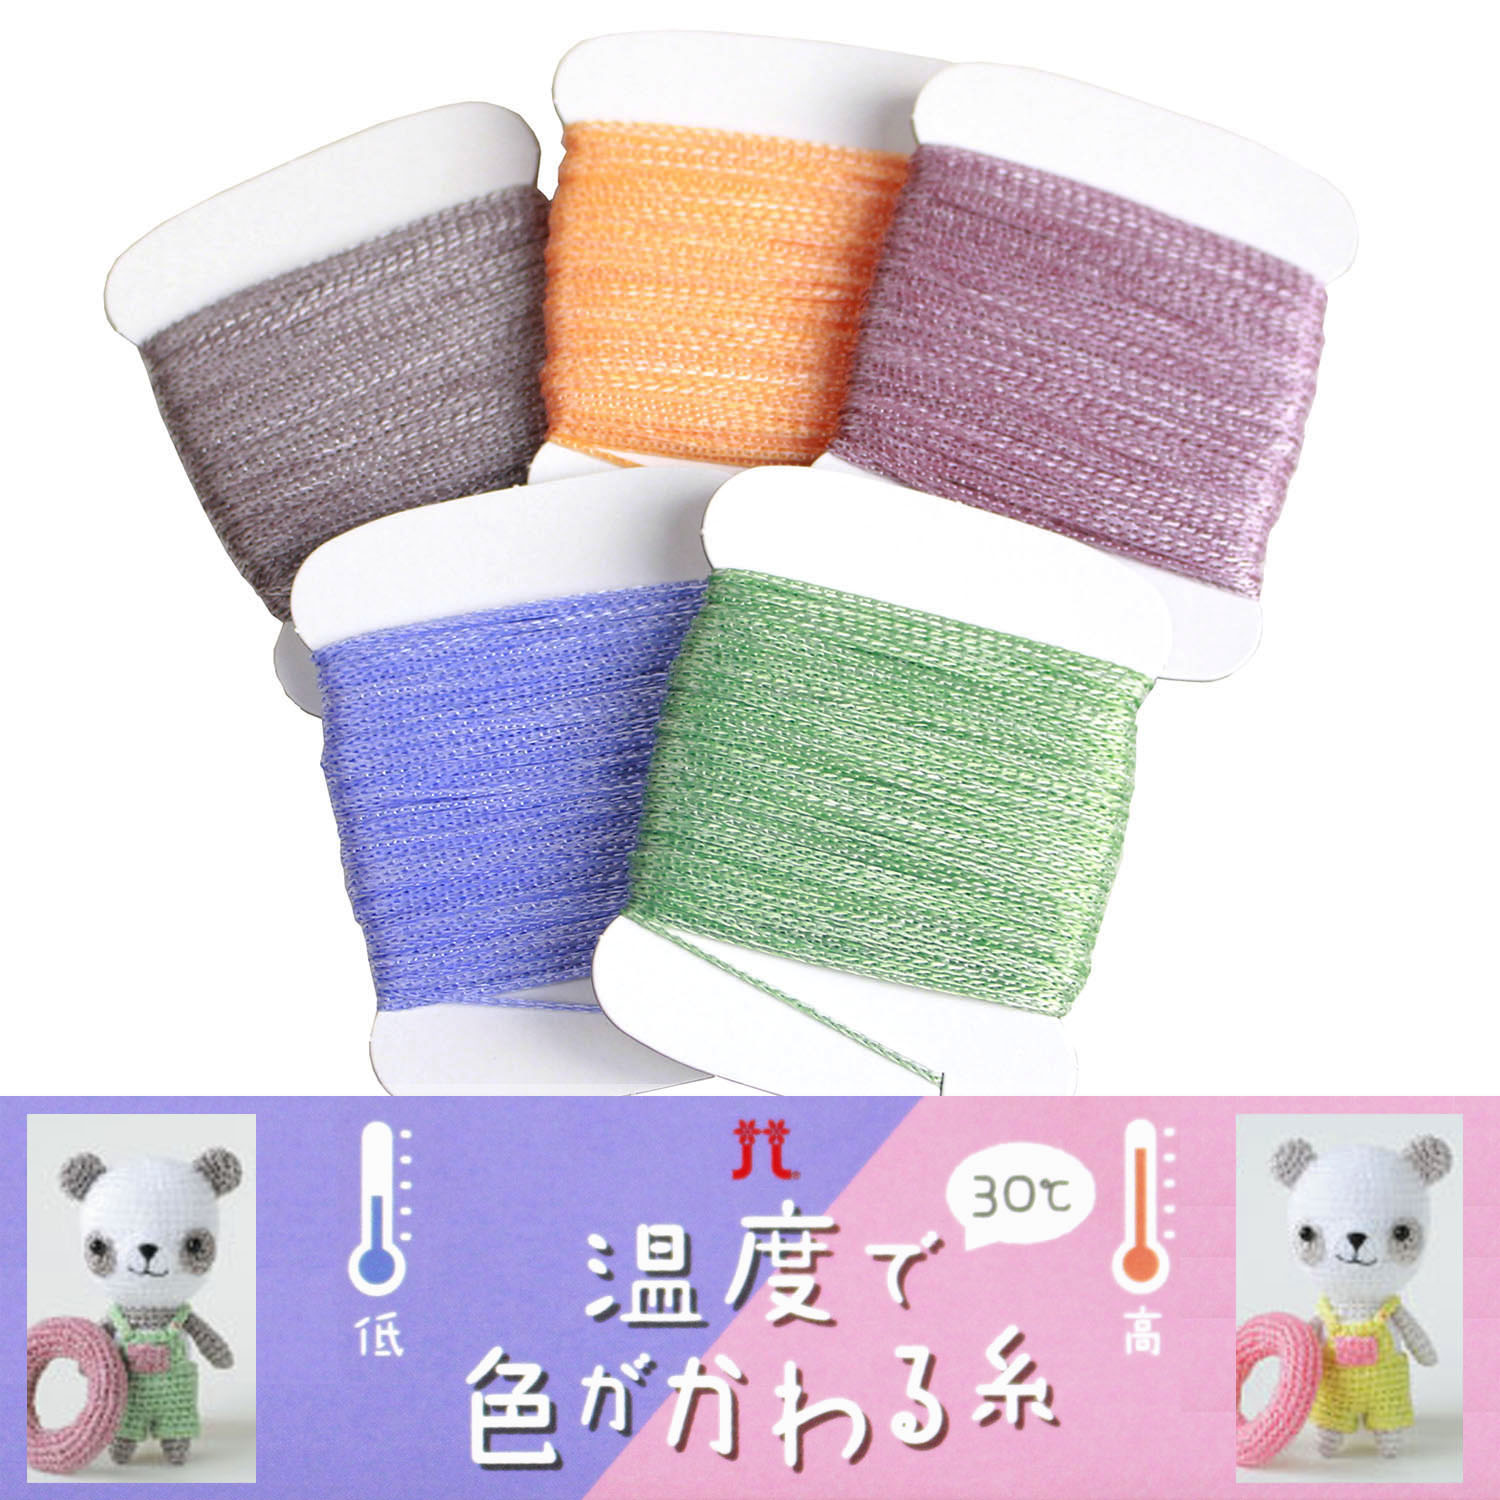 H3322 温度で色がかわる糸 30℃ 手編み糸 10g (枚)